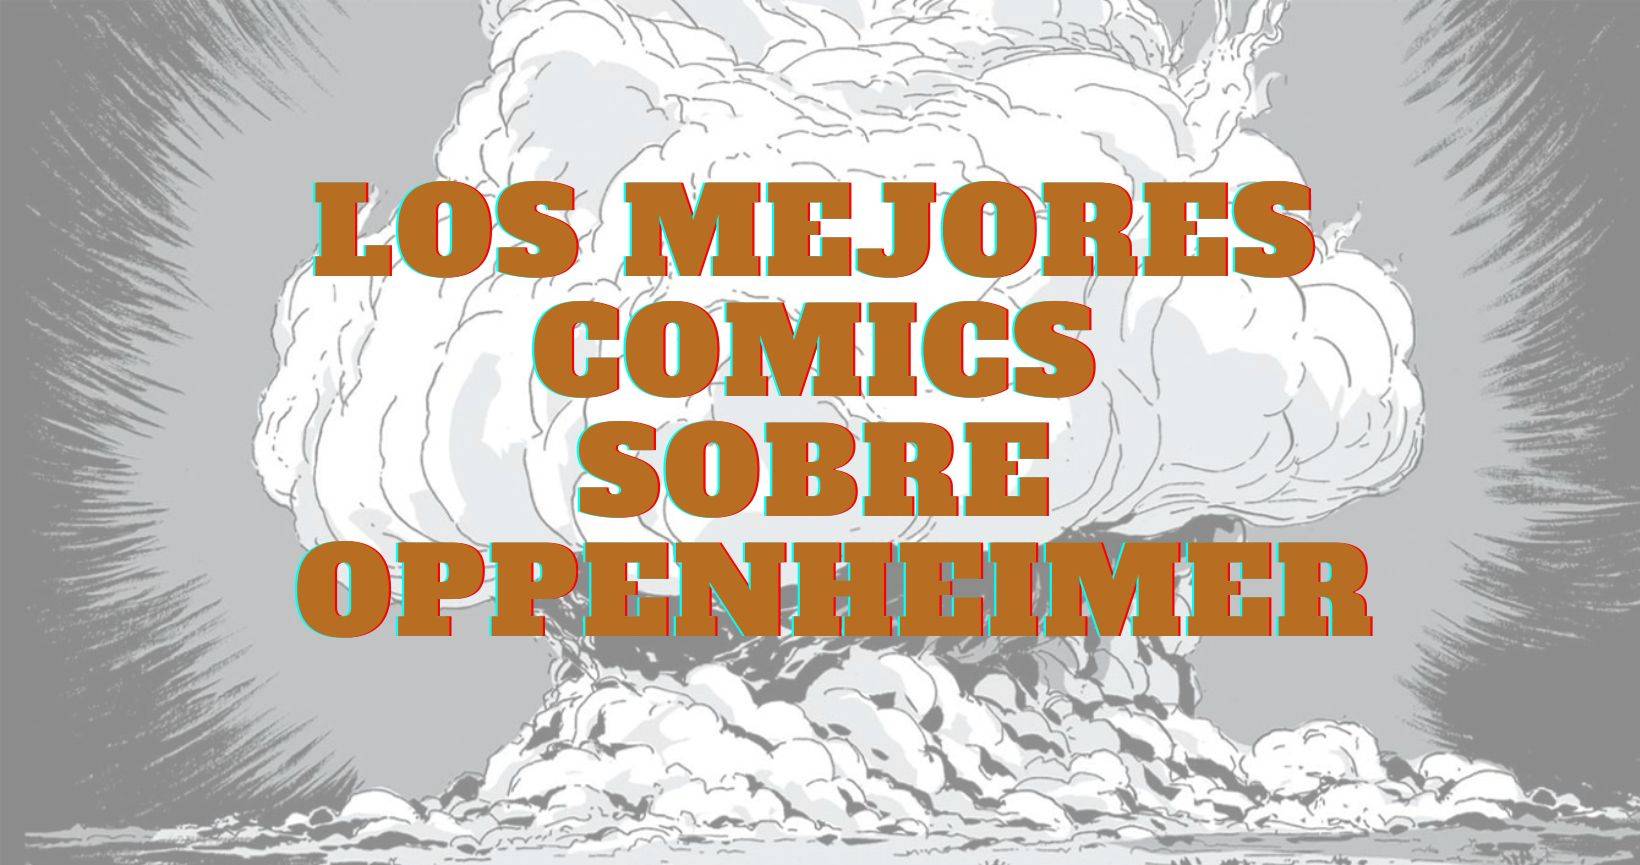 los mejores comics sobre oppemheimer y la bomba atomica